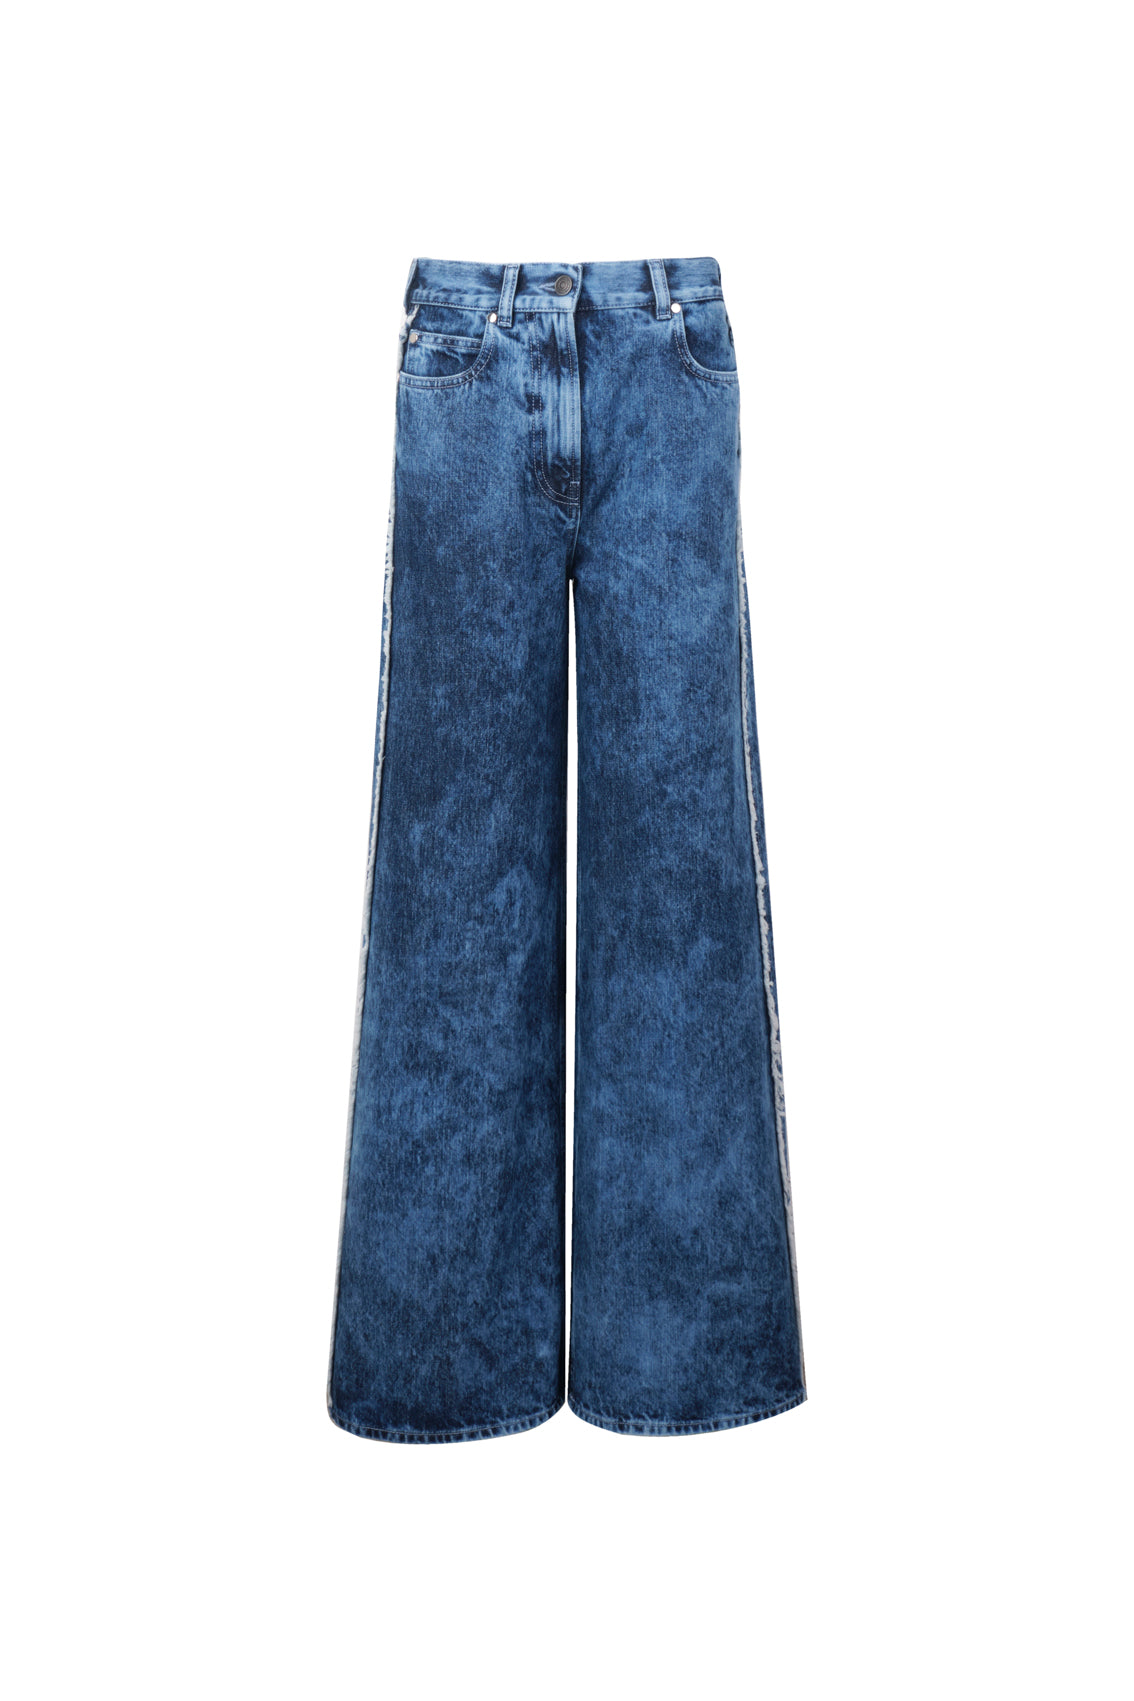 Unique Jacquard Denim Jeans